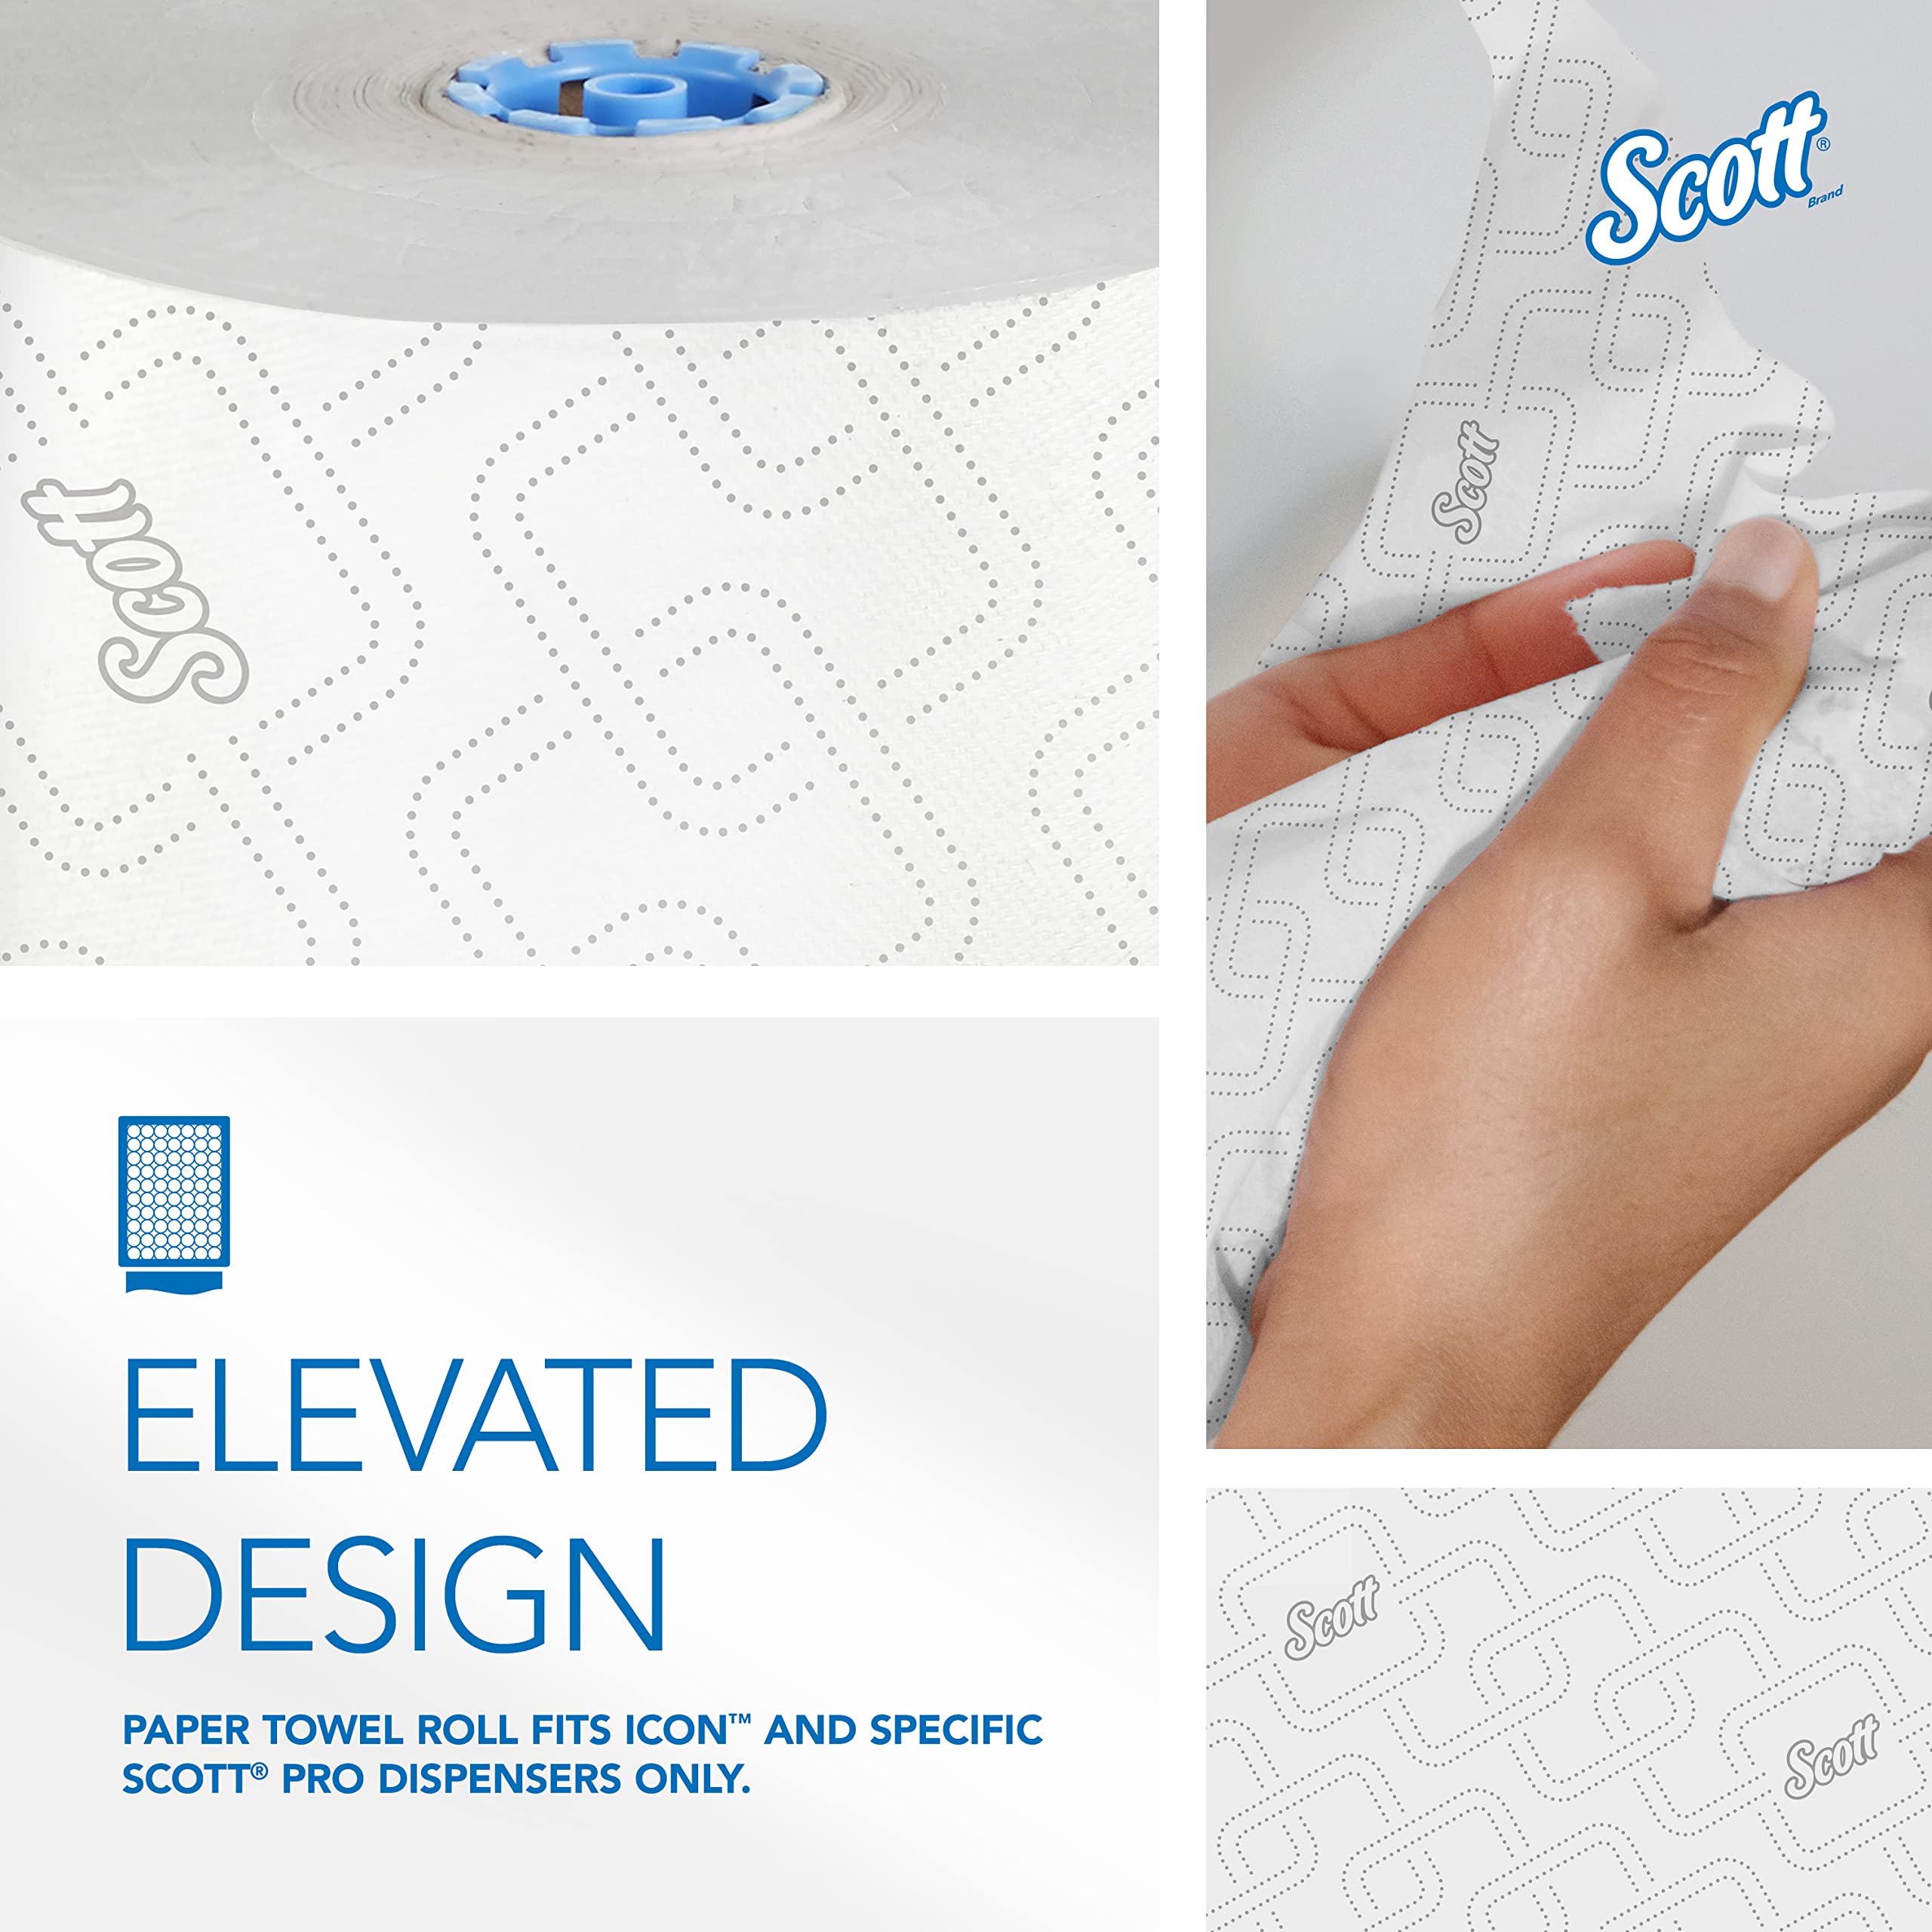 Scott Pro Hard Roll Paper Towels (25702) for Scott Pro Dispenser (Blue Core Only), Absorbency Pockets, White, 1150'/Roll, 6 Rolls/Case, 6,900'/Case